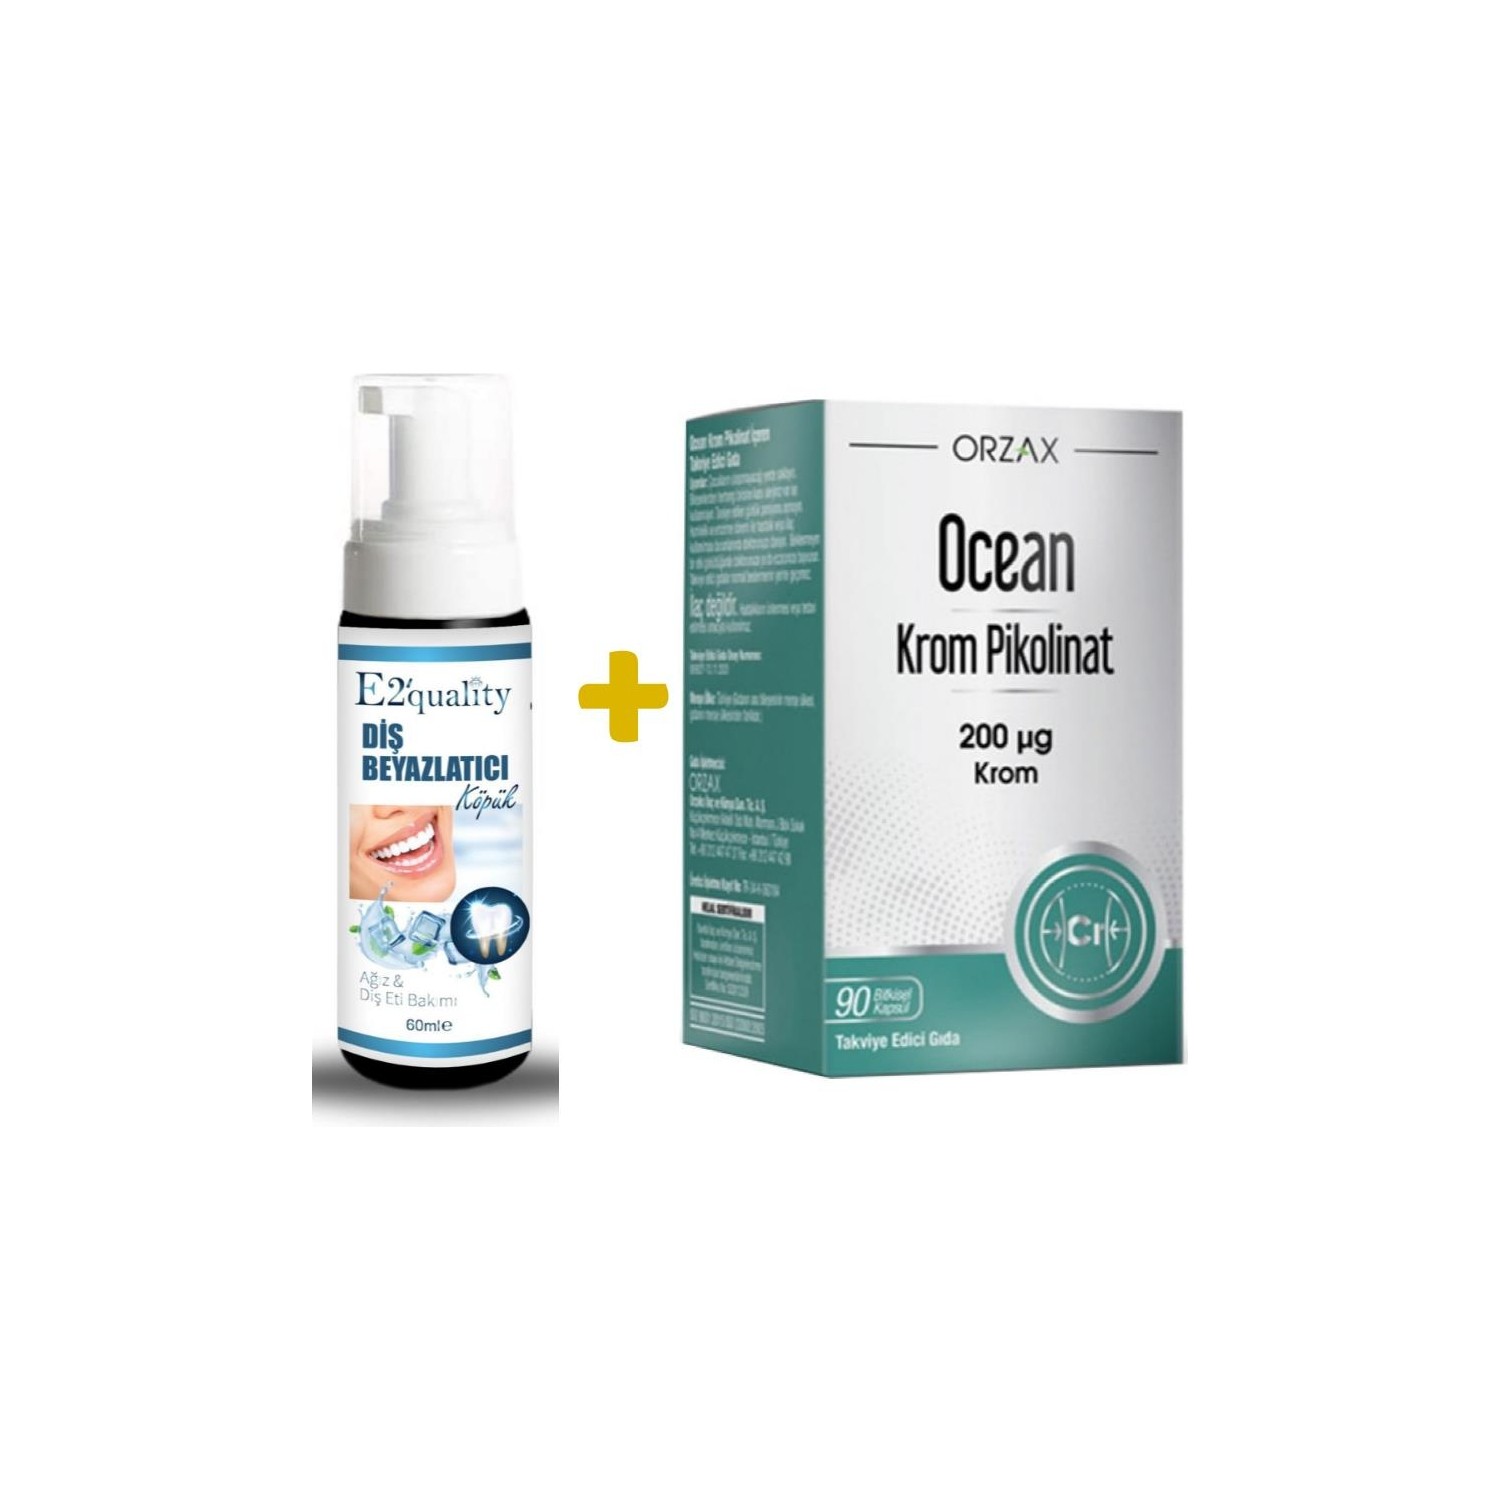 Отбеливающая пена для зубов Orzax E2' Quality + Пиколинат хрома Orzax Ocean, 90 капсул пиколинат хрома ocean orzax 20 мкг 90 капсул